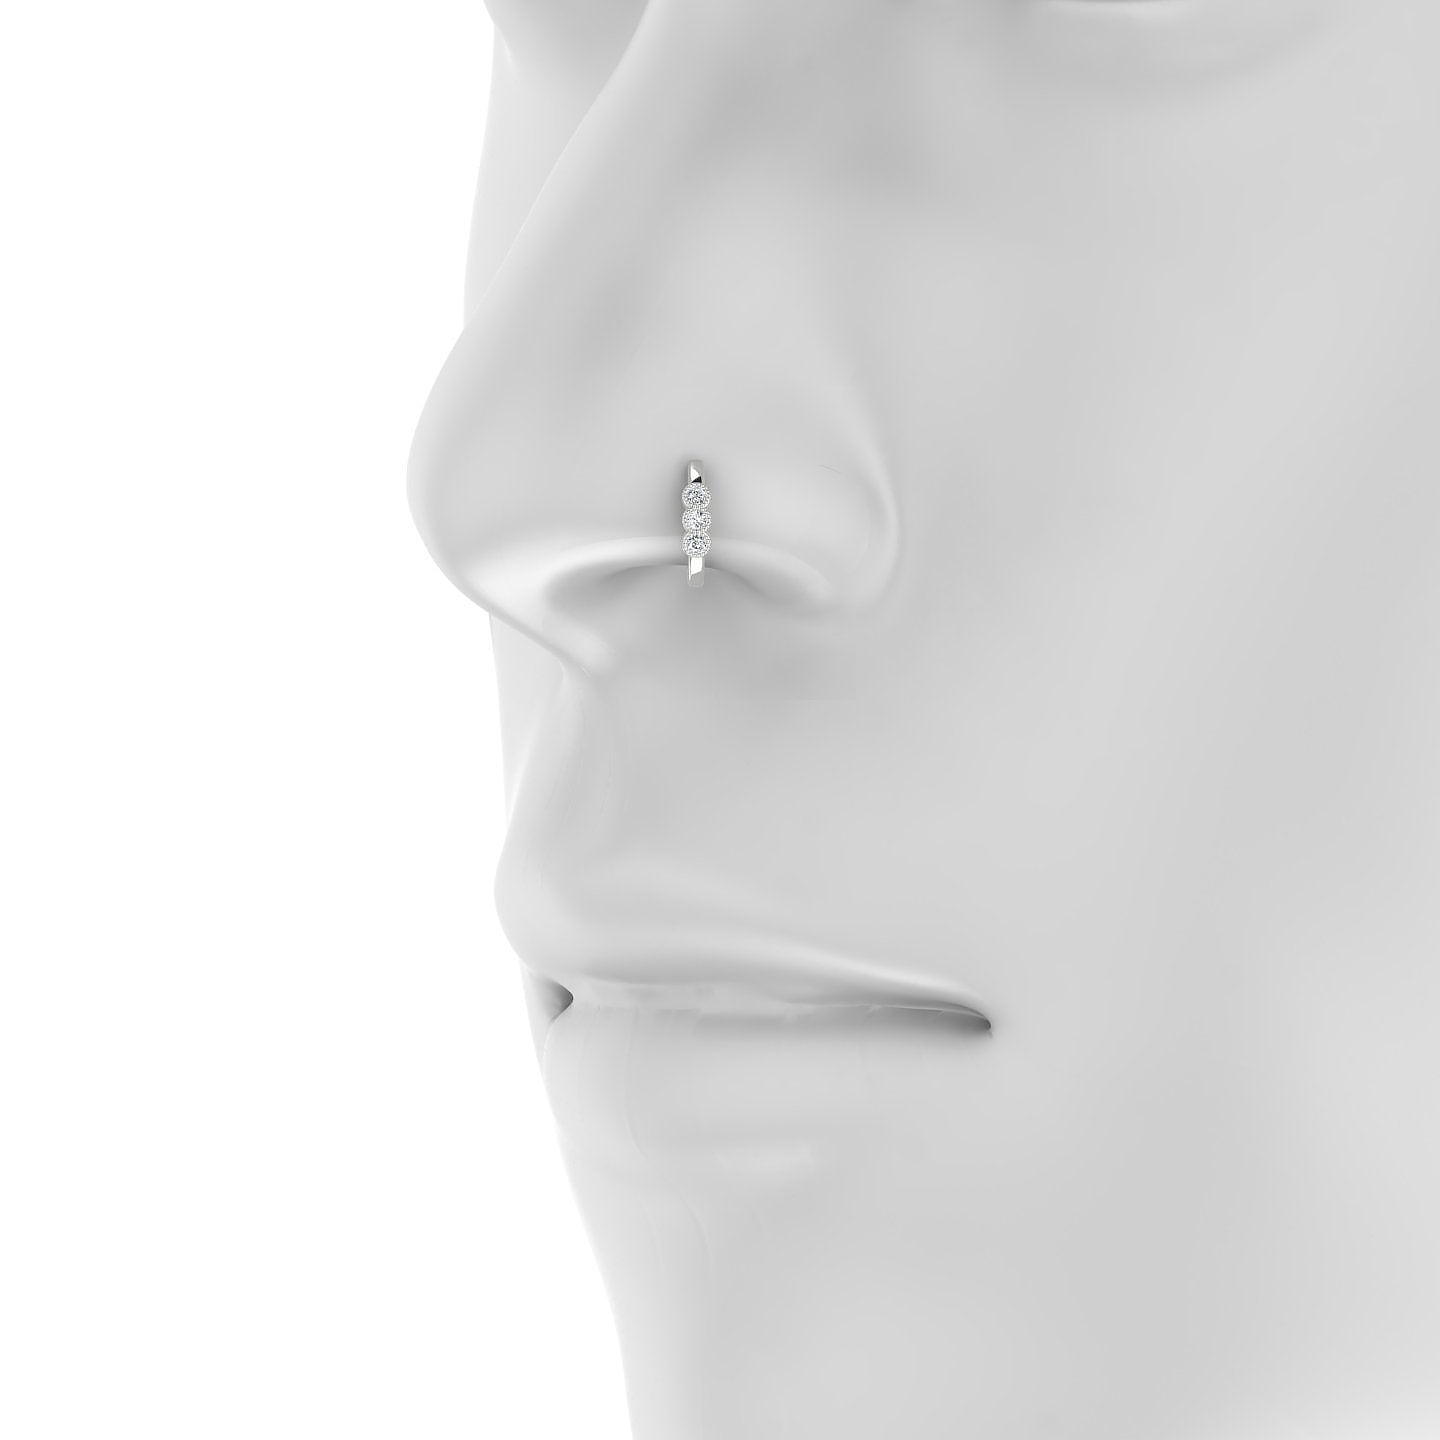 Irene | 18k White Gold 8 mm Trilogy Diamond Nose Ring Piercing